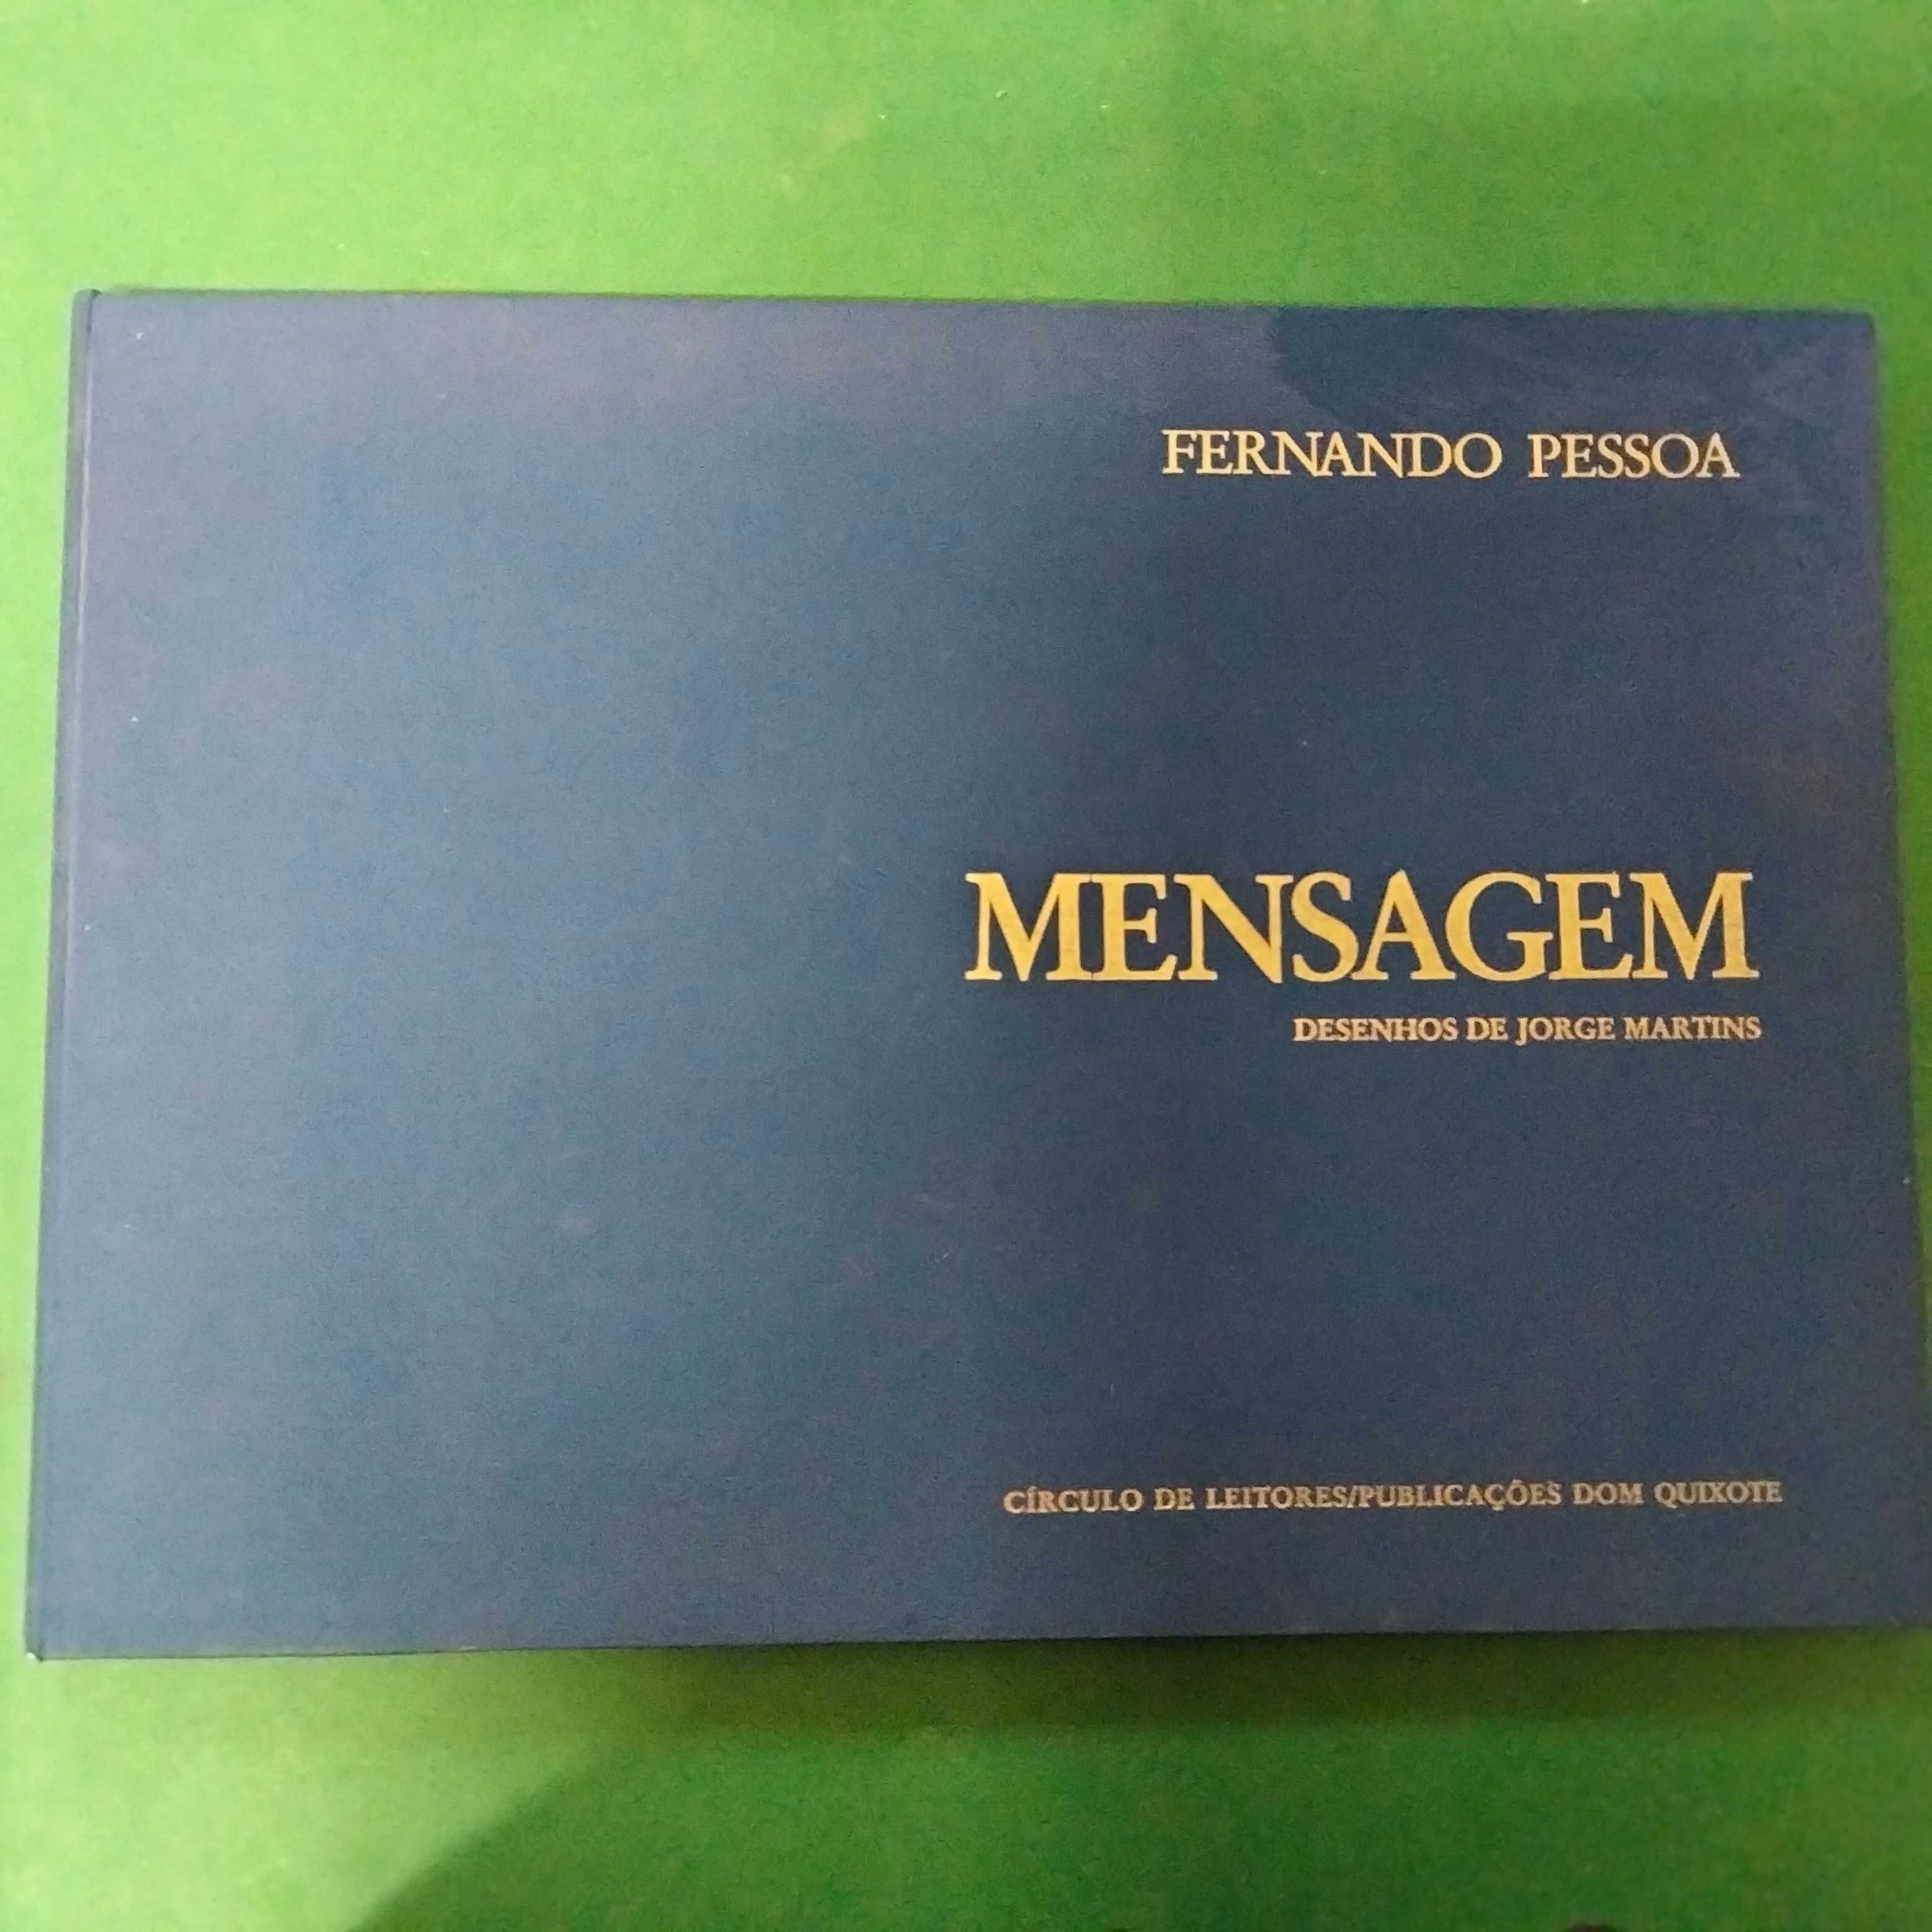 Mensagem - Fernando Pessoa - Desenhos de Jorge Martins.